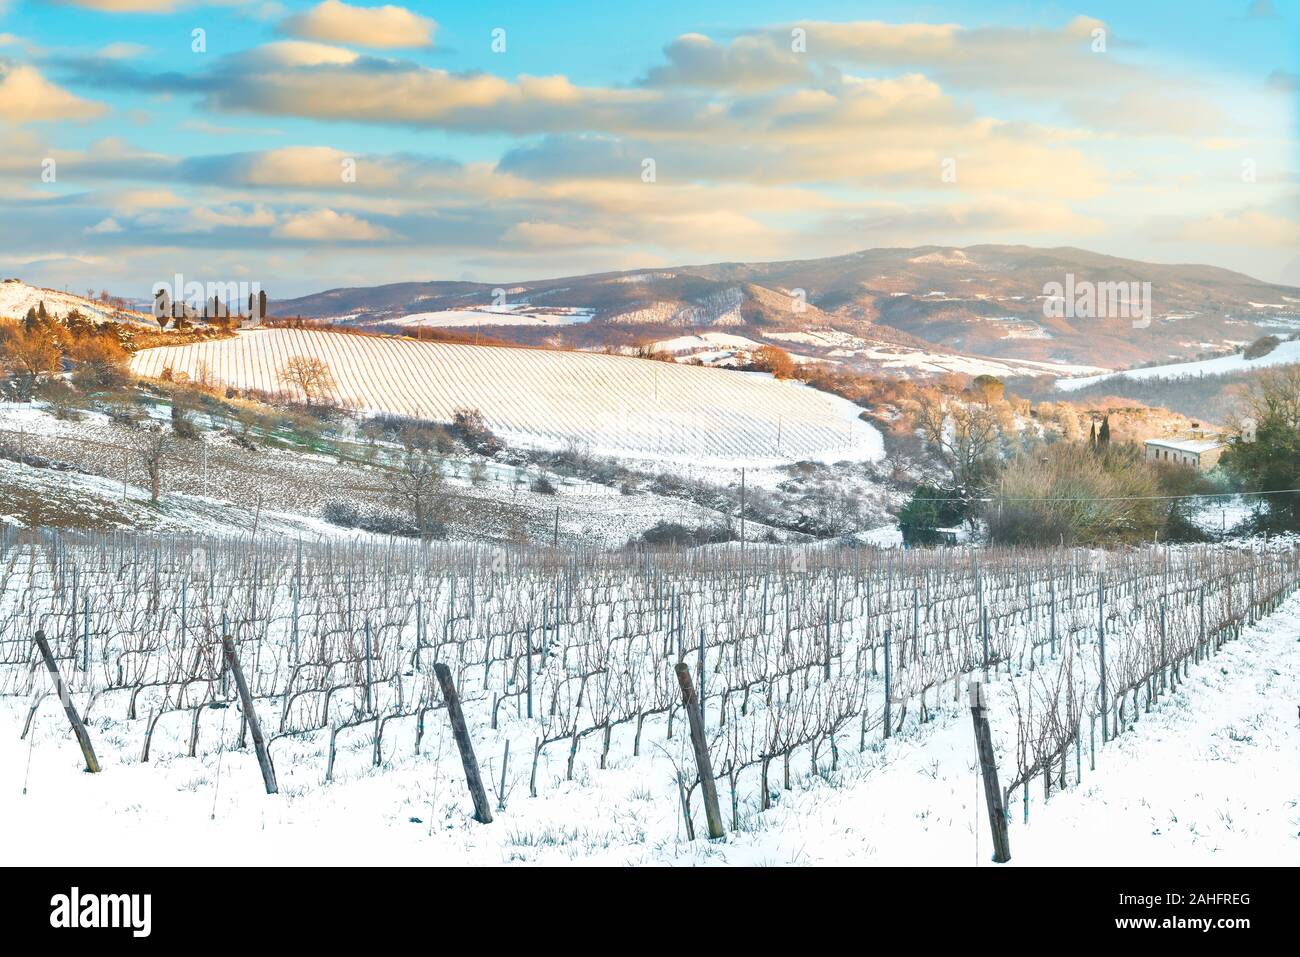 Les rangées de vignes couvertes de neige en hiver au coucher du soleil. La campagne de la région de Chianti, Sienne, Toscane, Italie Banque D'Images